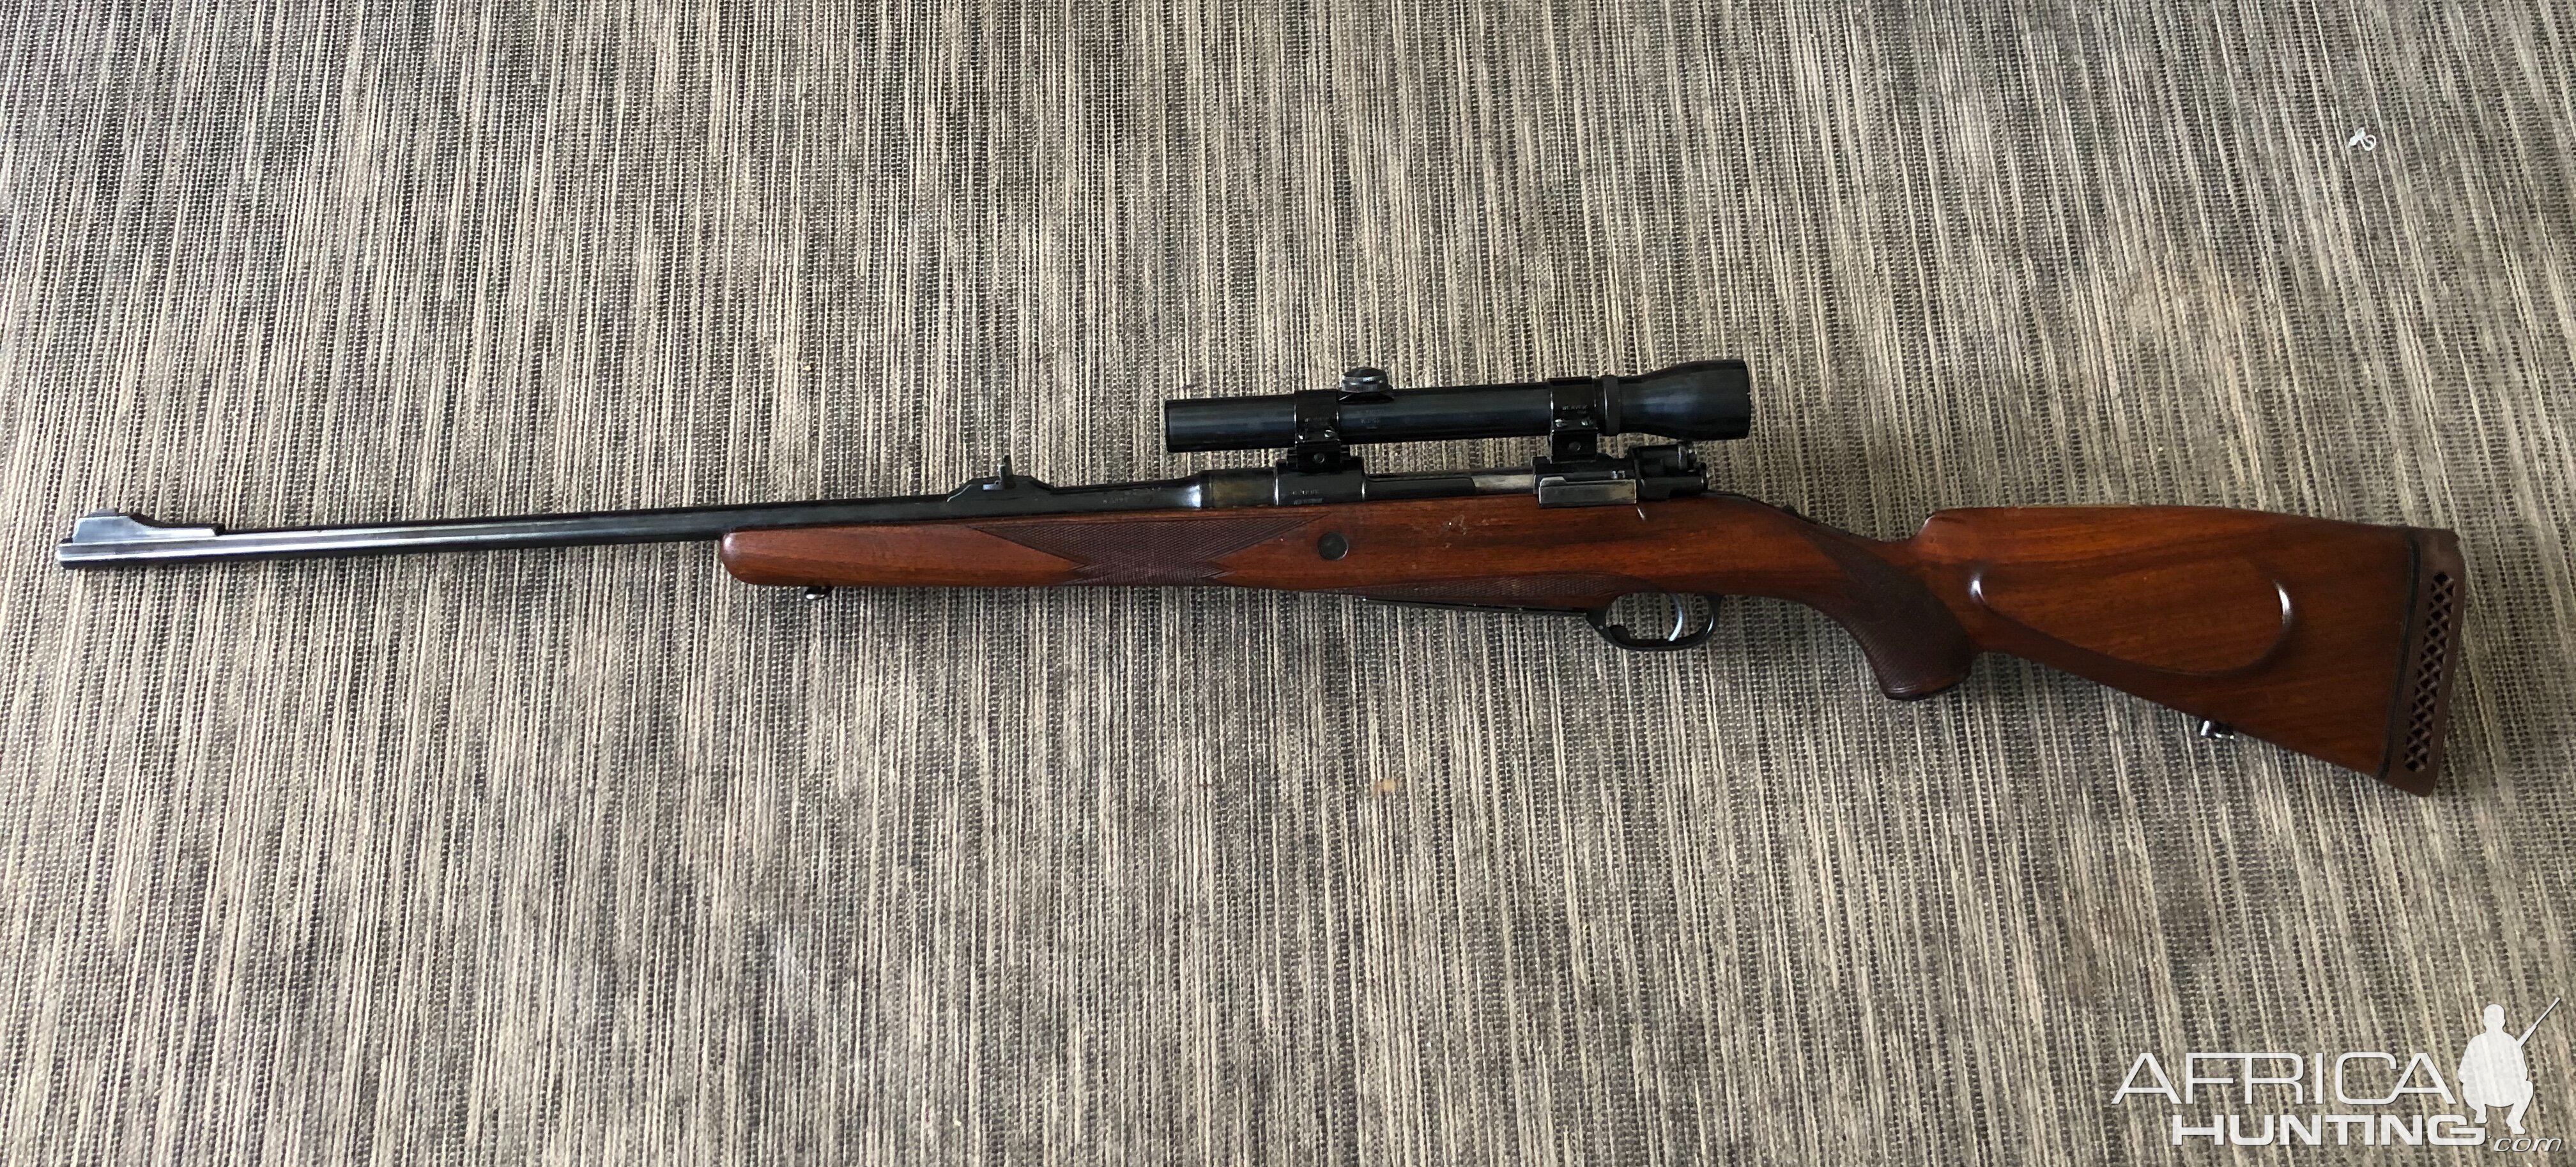 Heym M98 Rifle in 375 H&H